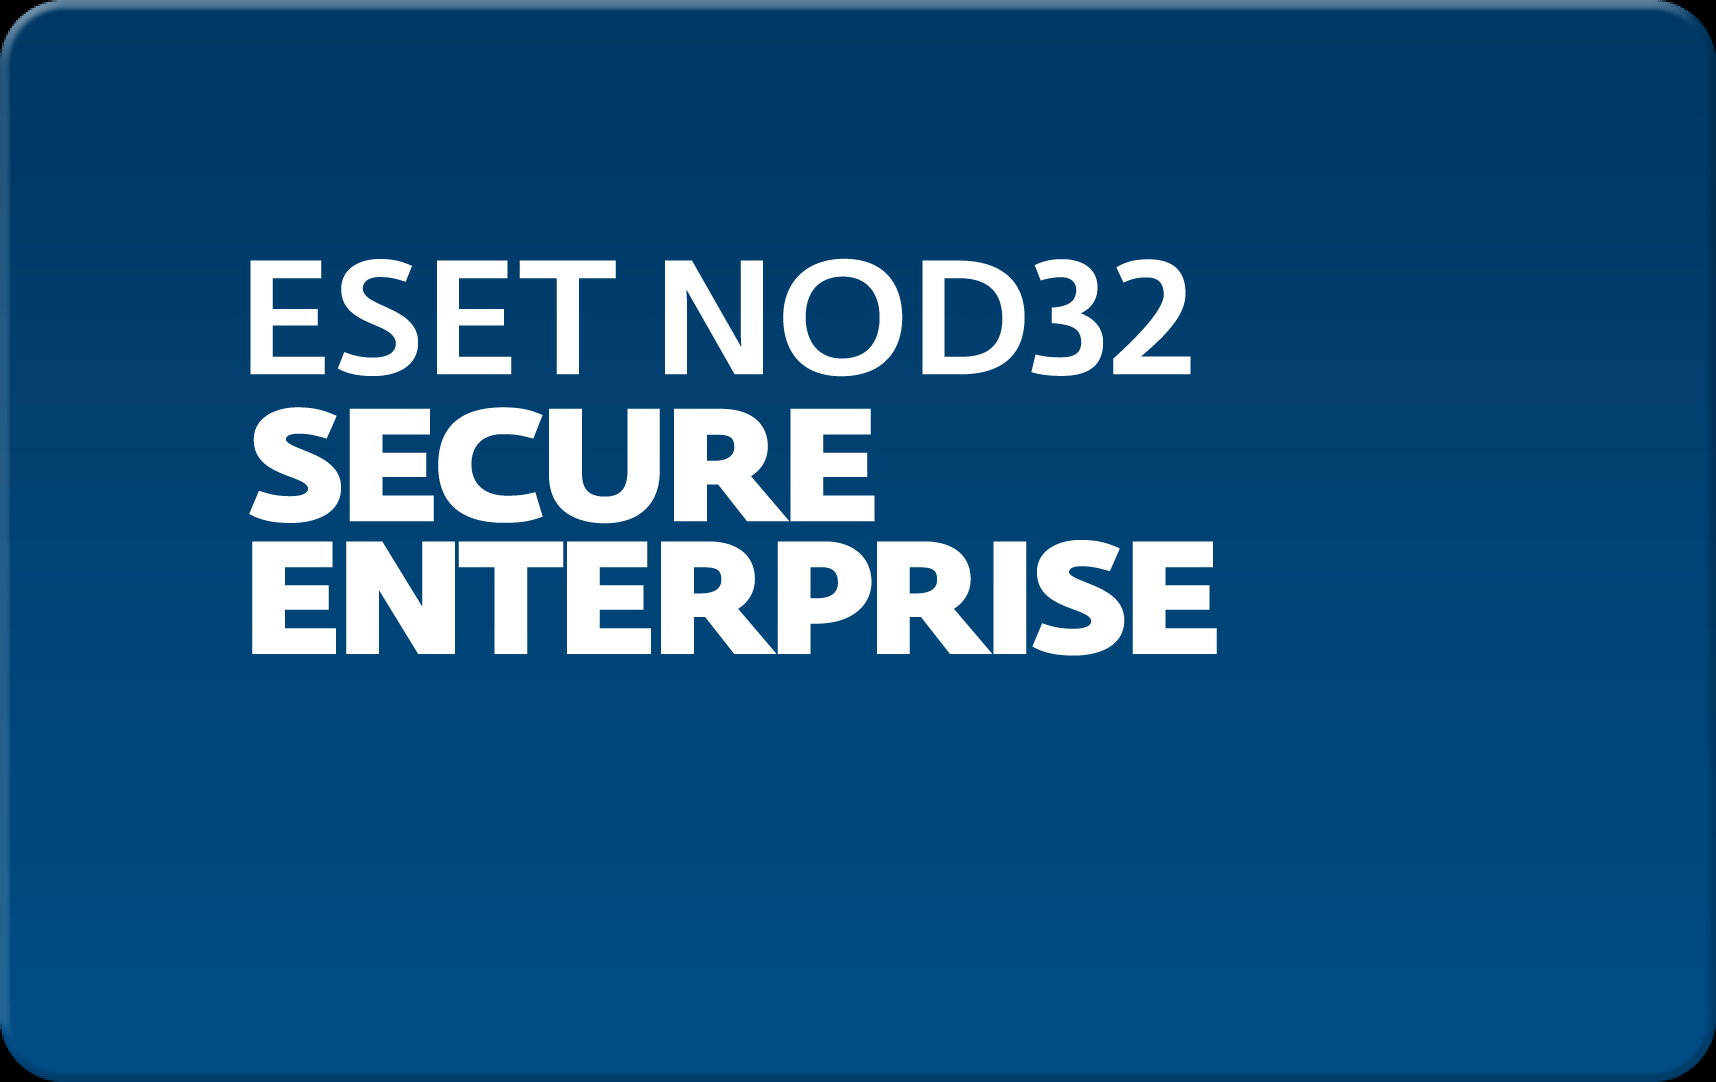        Eset NOD32 Secure Enterprise  164  NOD32-ESE-NS-1-164  #1